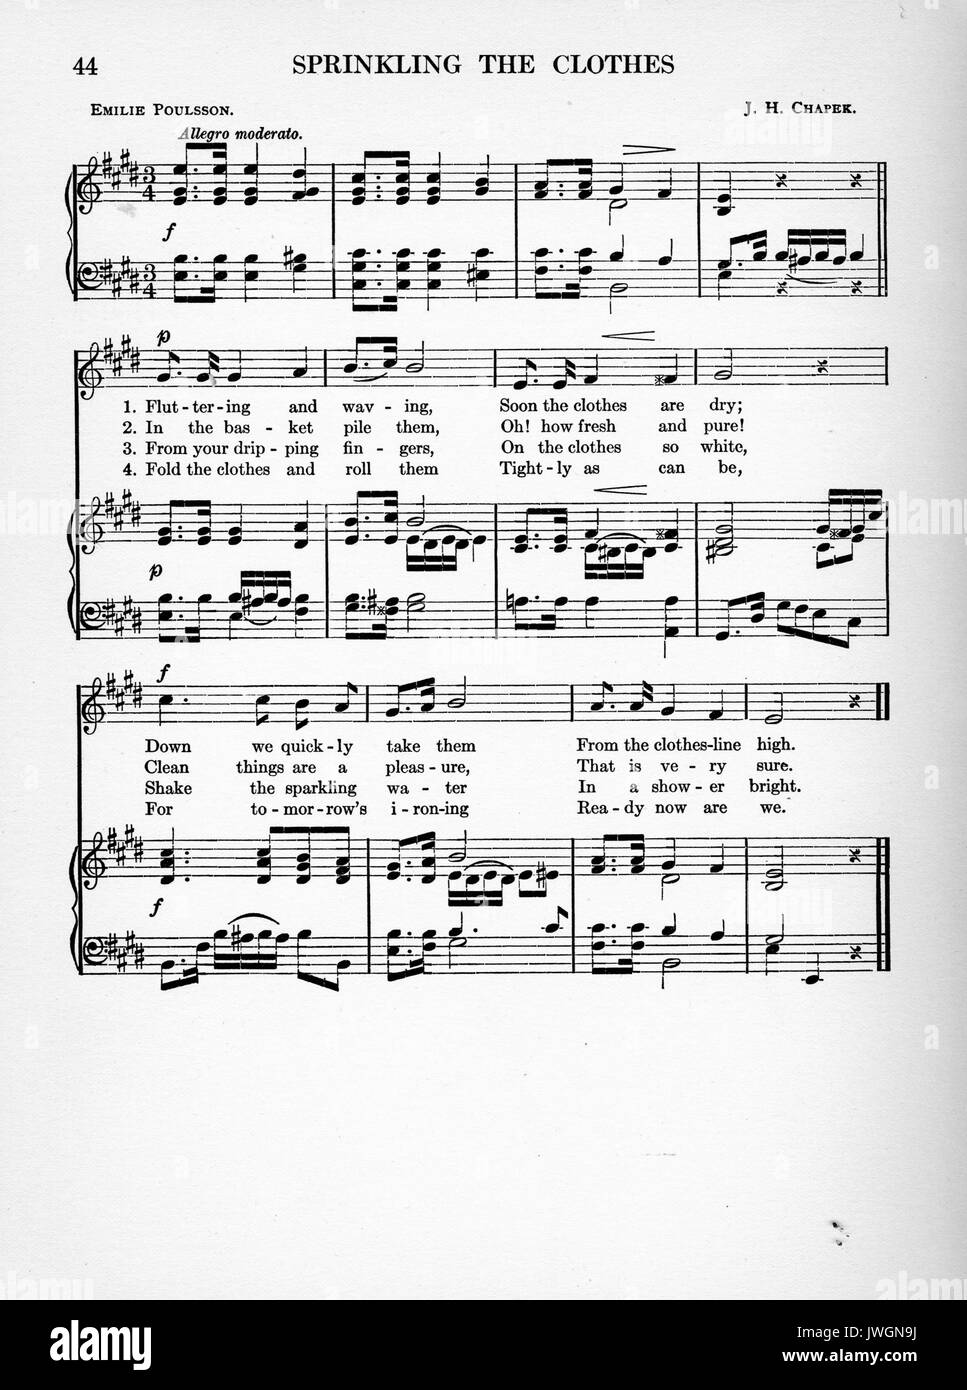 Besprengung die Kleidung, Noten Partitur für einen Song über Wäsche, 1893. Stockfoto